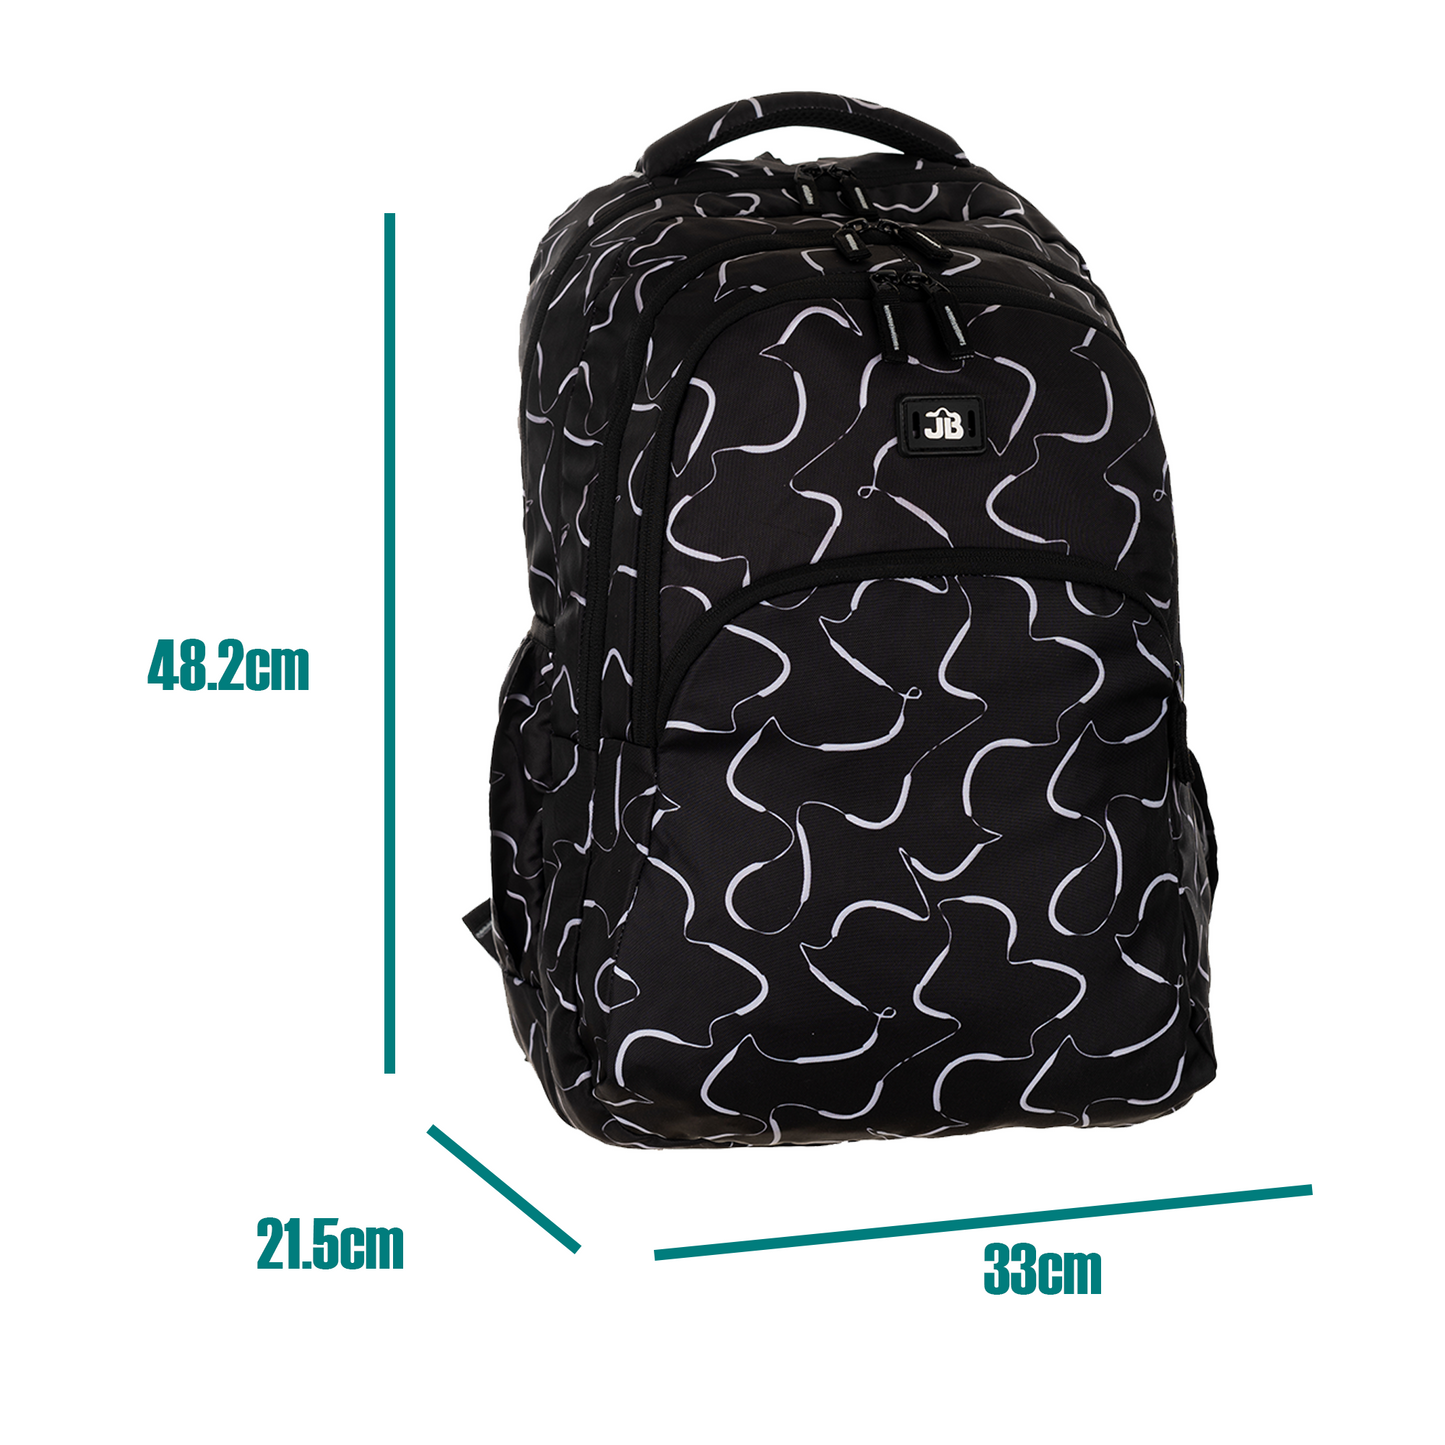 Black Printed School/College Backpack -19 Inch (Black)